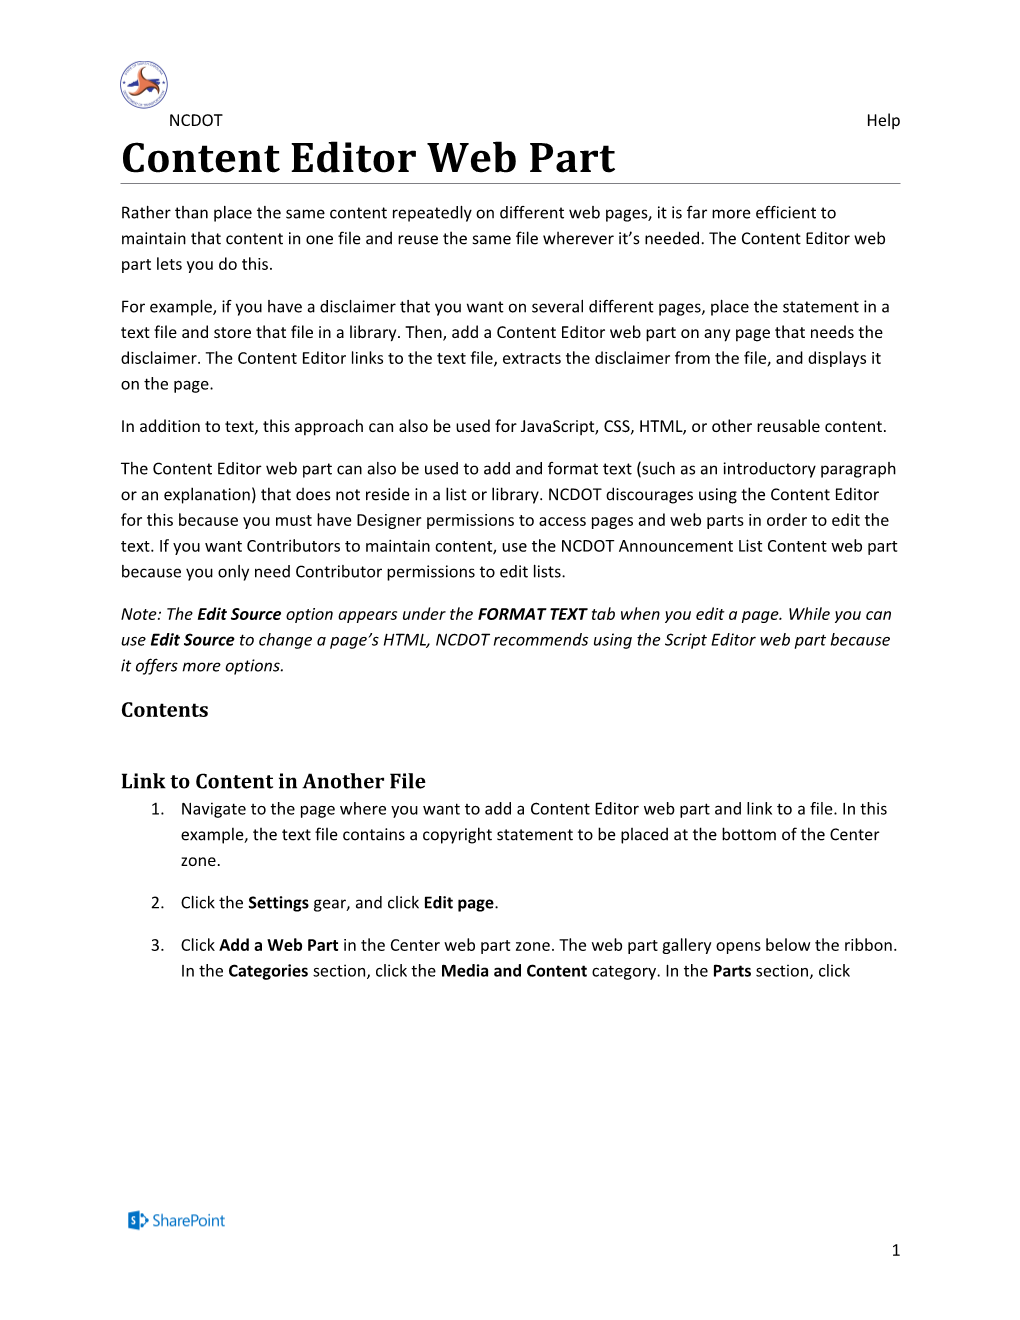 Content Editor Web Part (D)